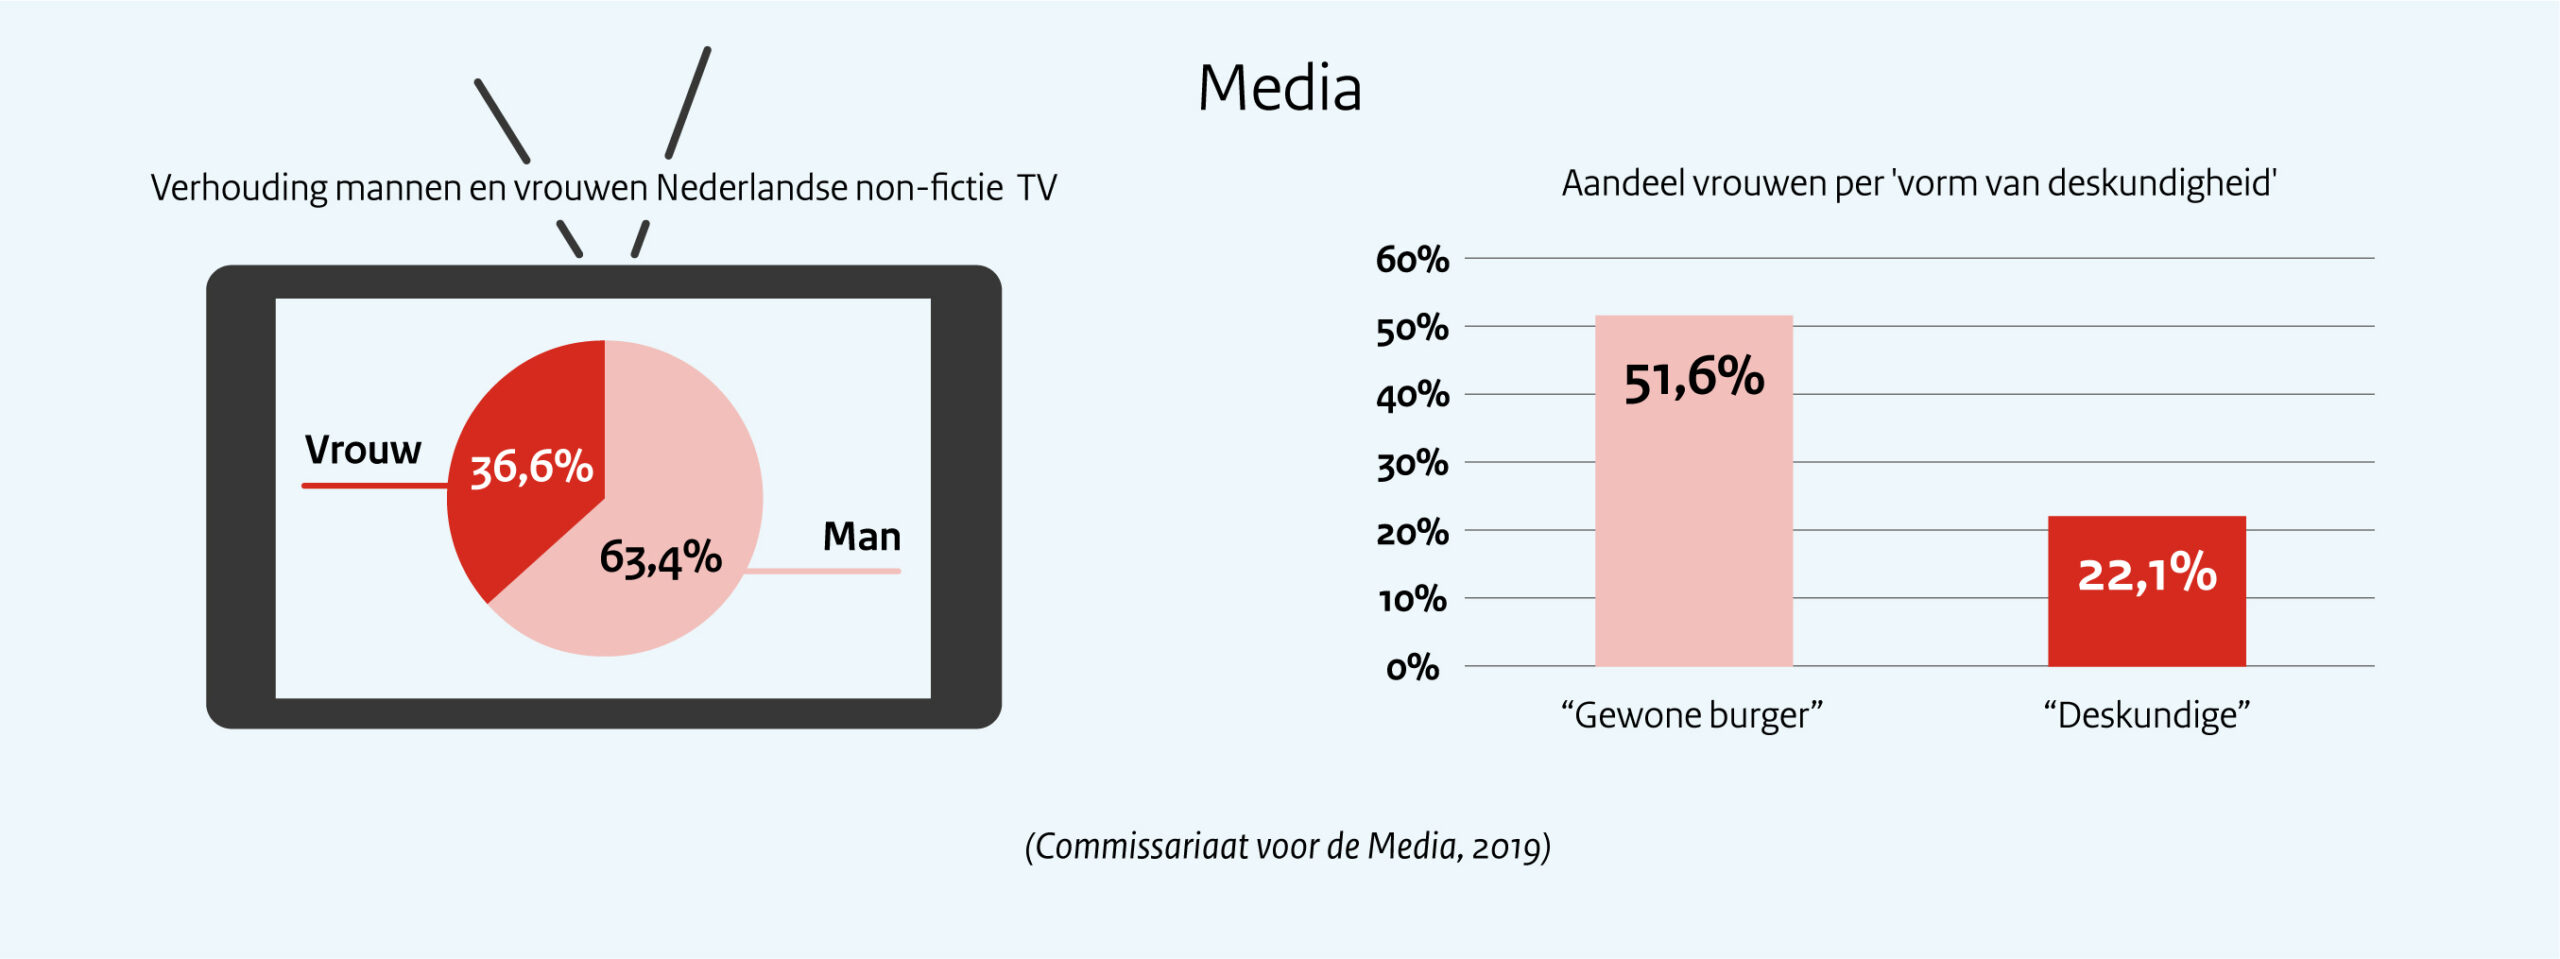 Verhouding mannen en vrouwen Nederlandse non-fictie TV.

In 2019 was het aandeel vrouwen in Nederlandse non-fictie televisieprogramma’s 36,6 procent.


Aandeel vrouwen per ‘vorm van deskundigheid’.

Vrouwelijke nieuwsbronnen zijn meer dan mannen in beeld als een gewone burger op straat (51,6 procent), maar minder in beeld met toenemende deskundigheid (22,1 procent).

Deze cijfers komen uit het rapport over de representatie van vrouwen en mannen op televisie dat het Commissariaat voor de Media in 2019 uitbracht. 
